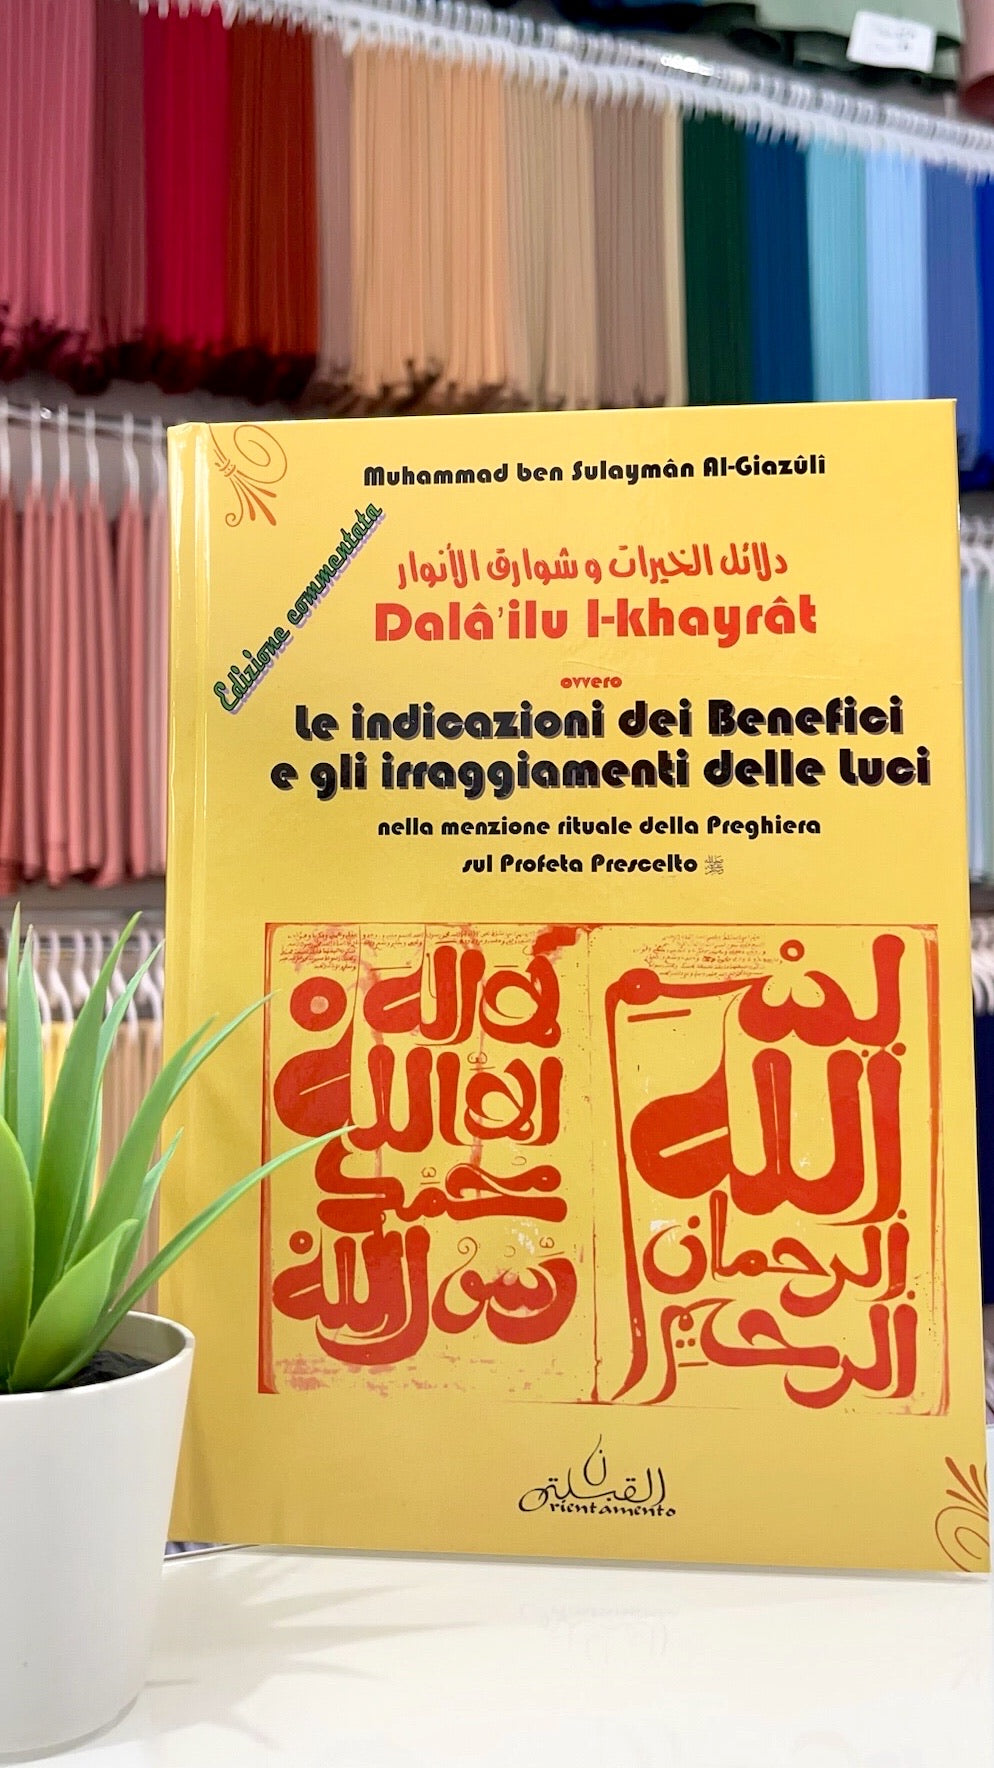 Le indicazioni dei benefici e gli irraggiamenti delle luci (Dala'ilu l-khayrat) - Hijab Paradise 